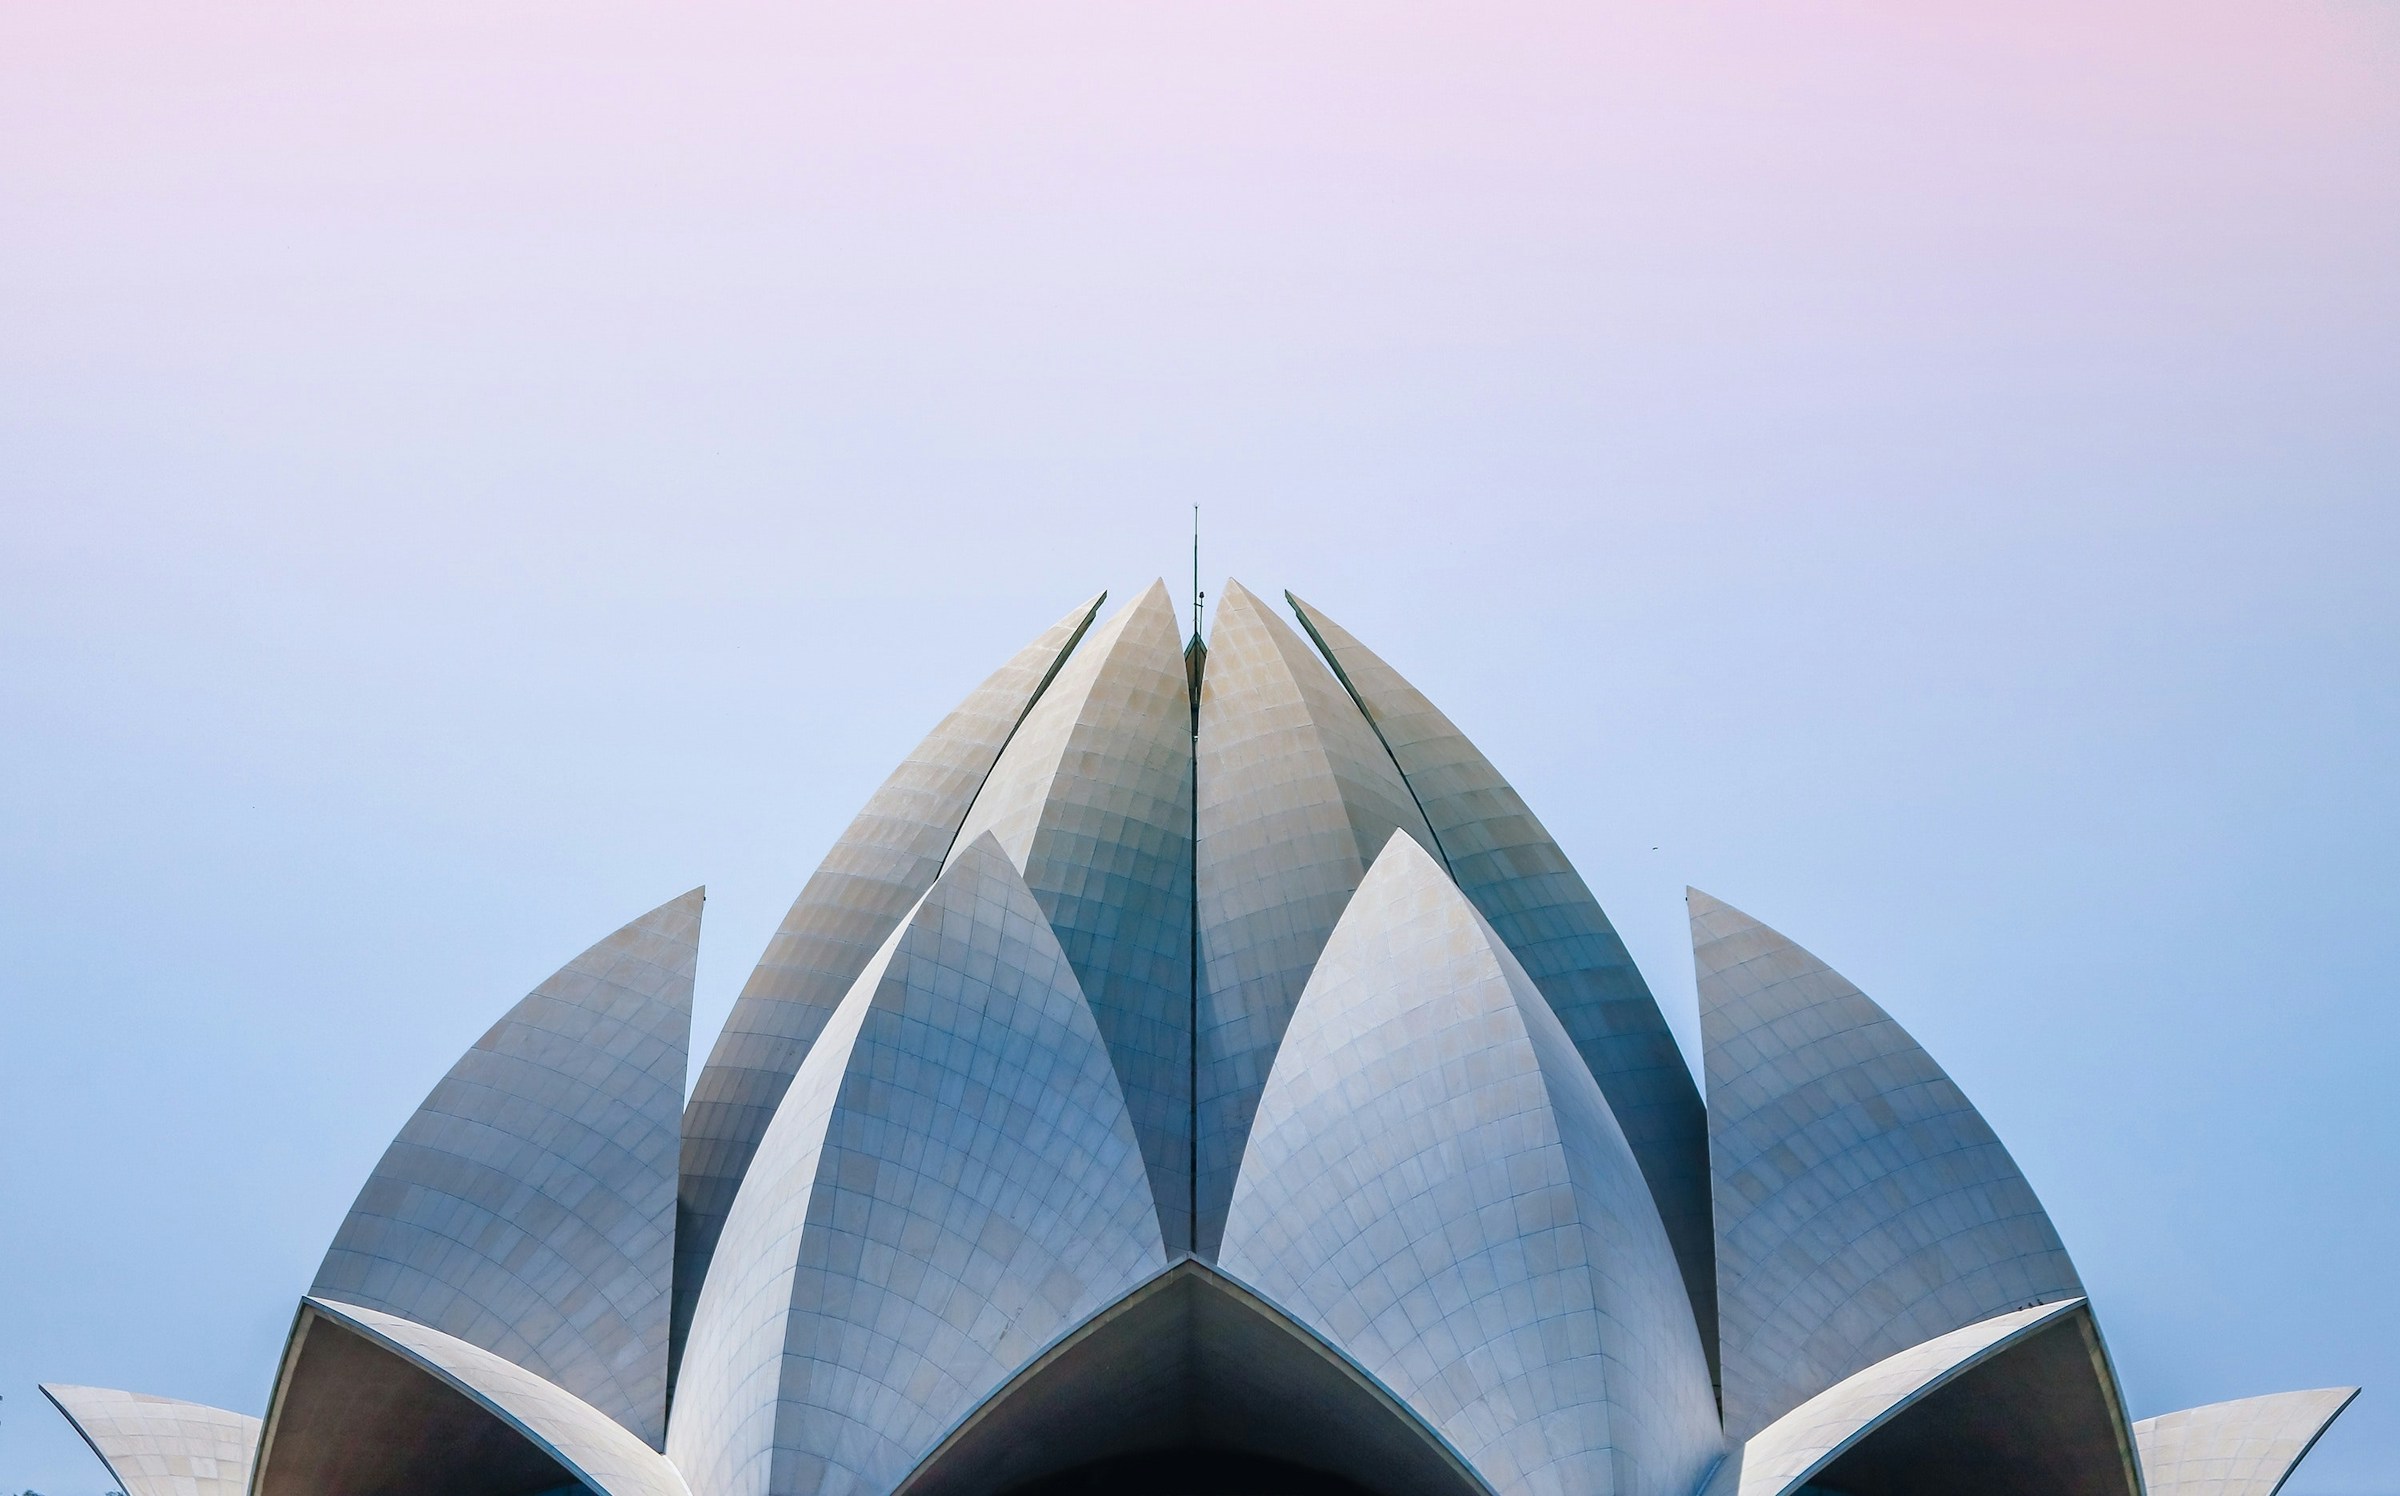 Symmetrinen näkymä modernista rakennuksesta, jossa on lootusmainen rakenne pastellinväristä taivasta vasten Delhissä.